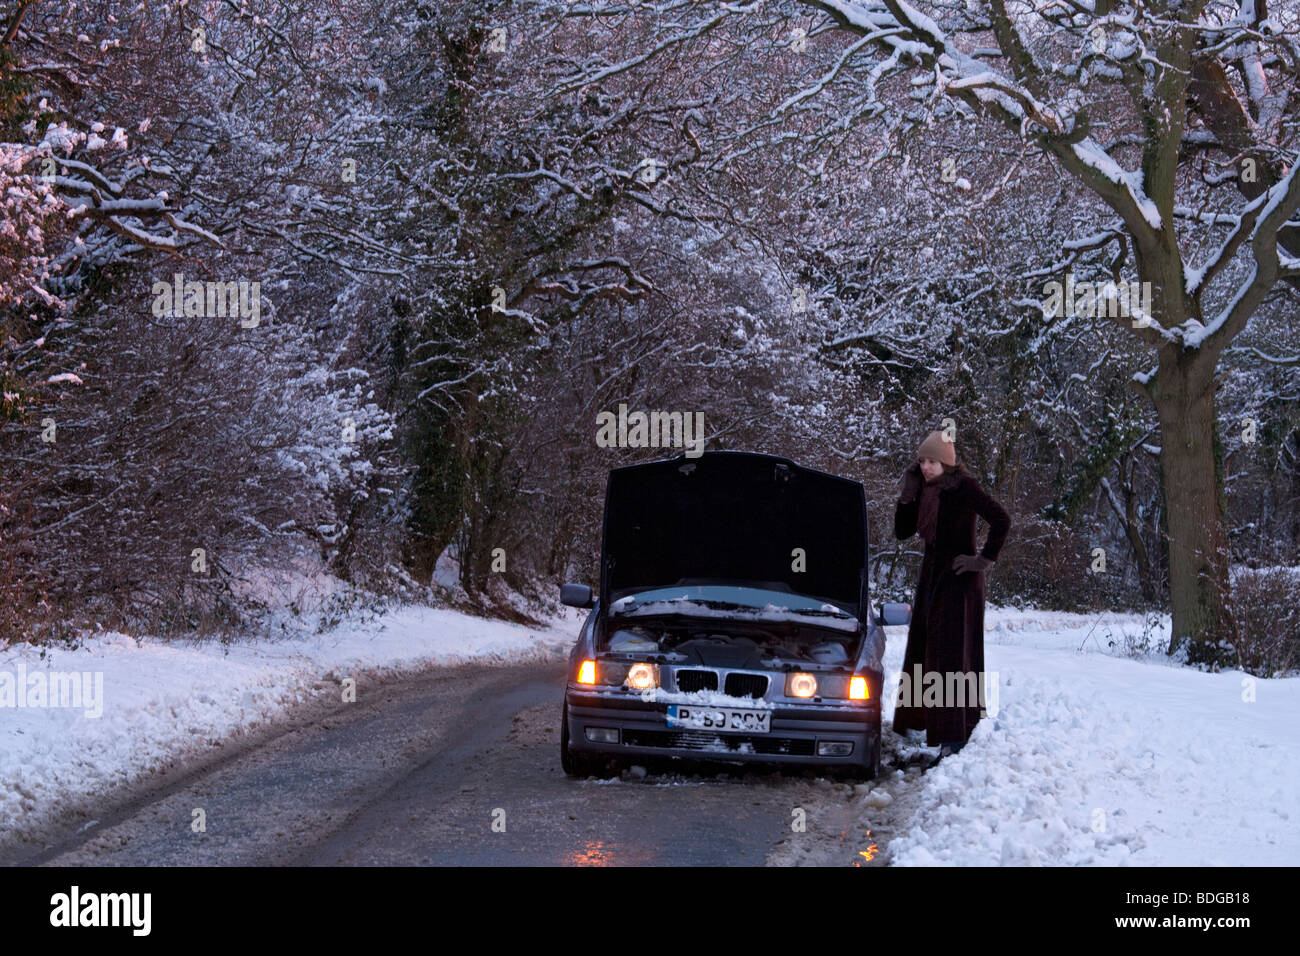 Le donne sul suo proprio con ripartiti in auto nella neve,arenati su telefono cellulare tenta di ottenere aiuto per sistemarla. Foto Stock